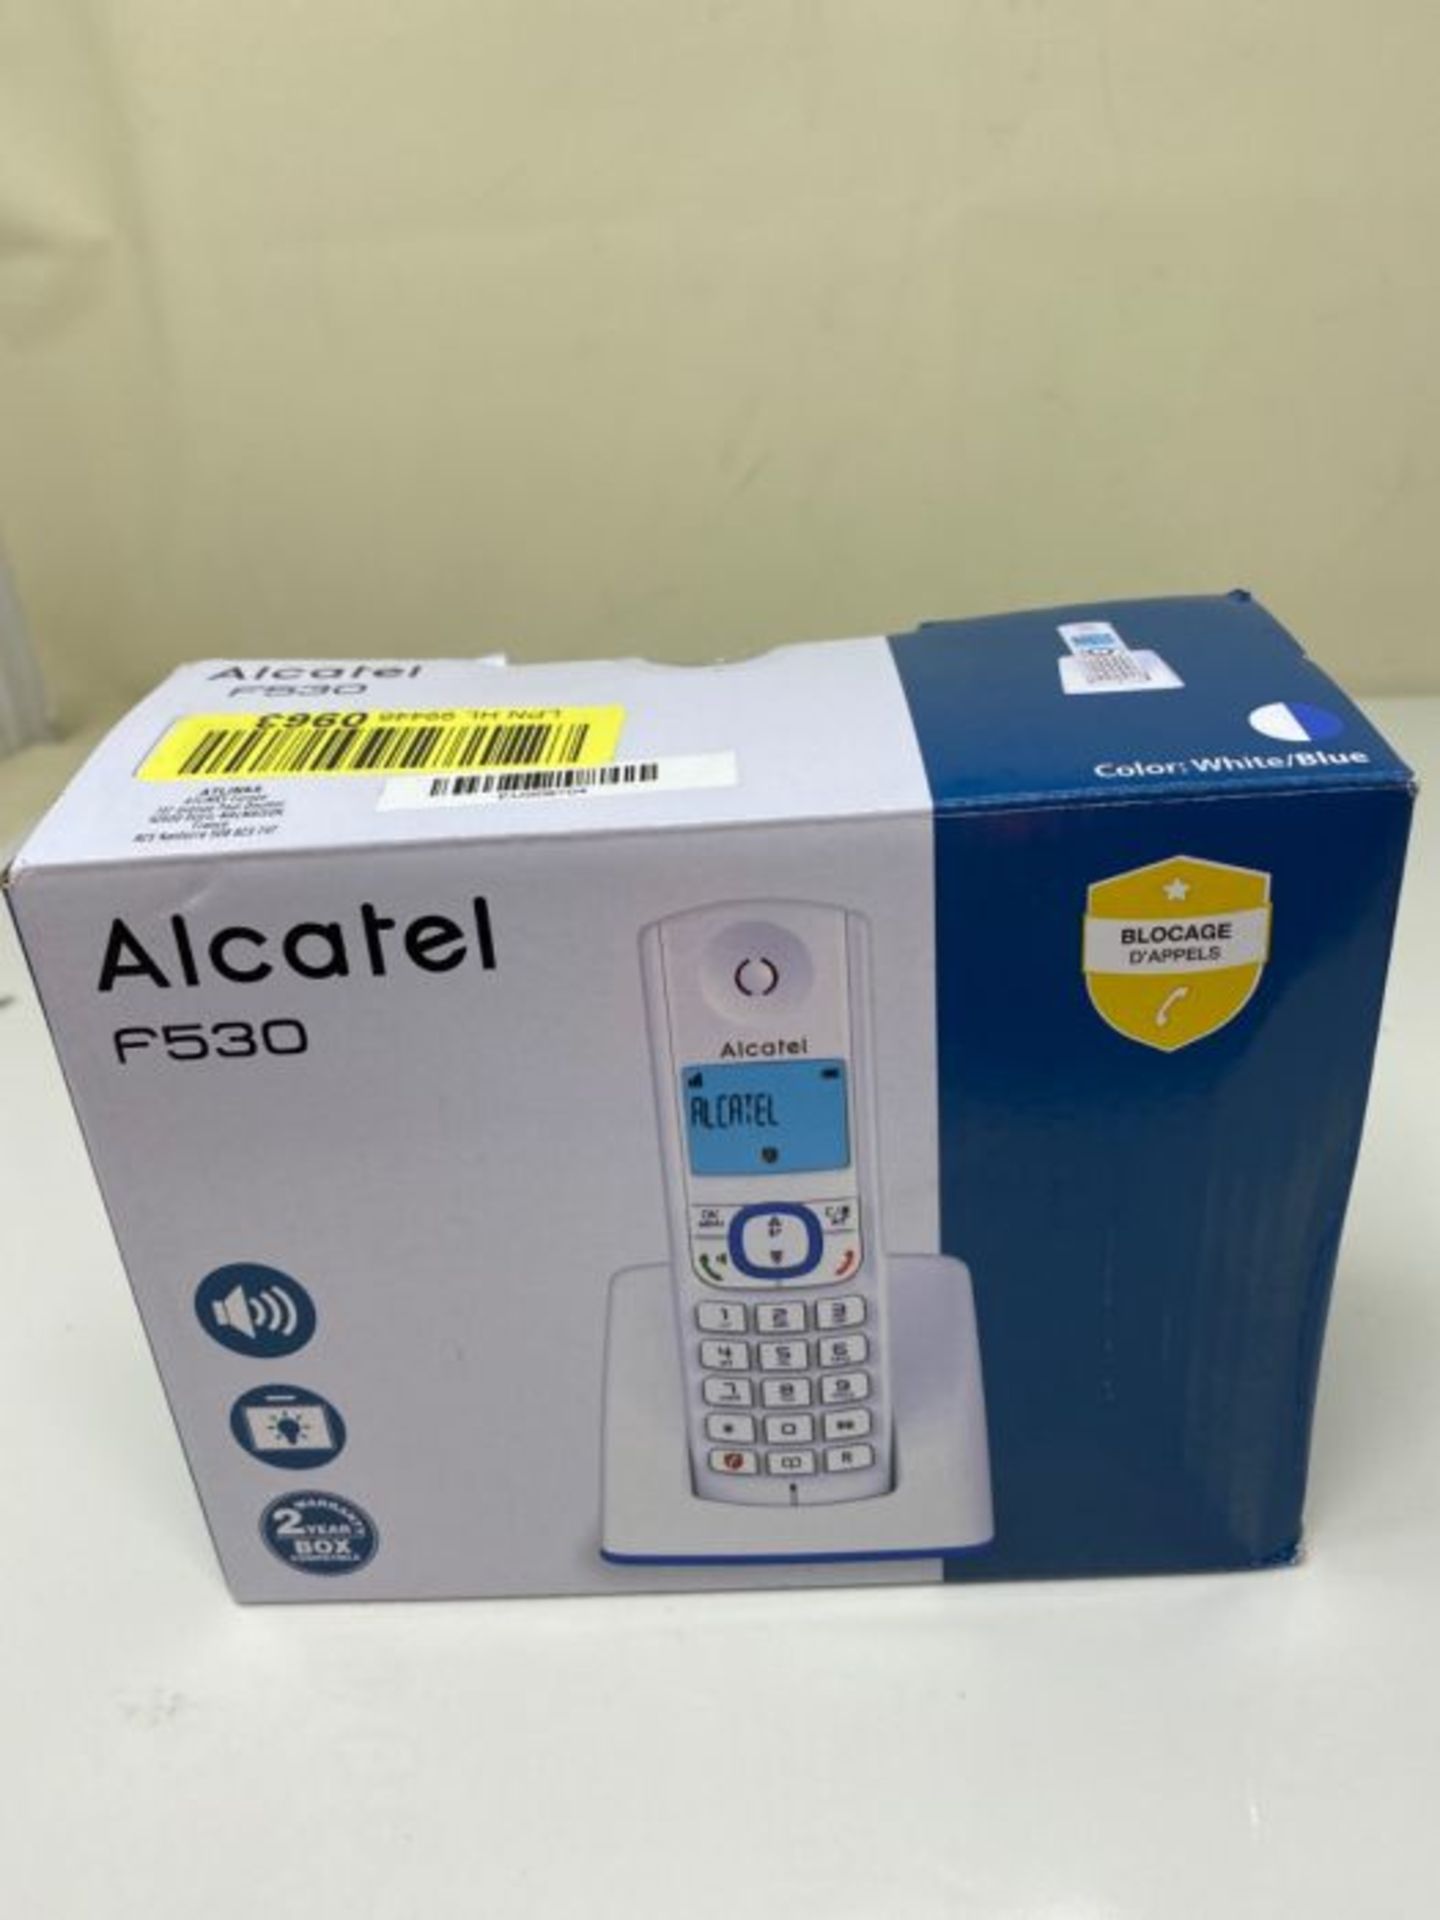 Alcatel F530 - Téléphone sans fil DECT design aux coloris contemporains, Mains libre - Image 2 of 3